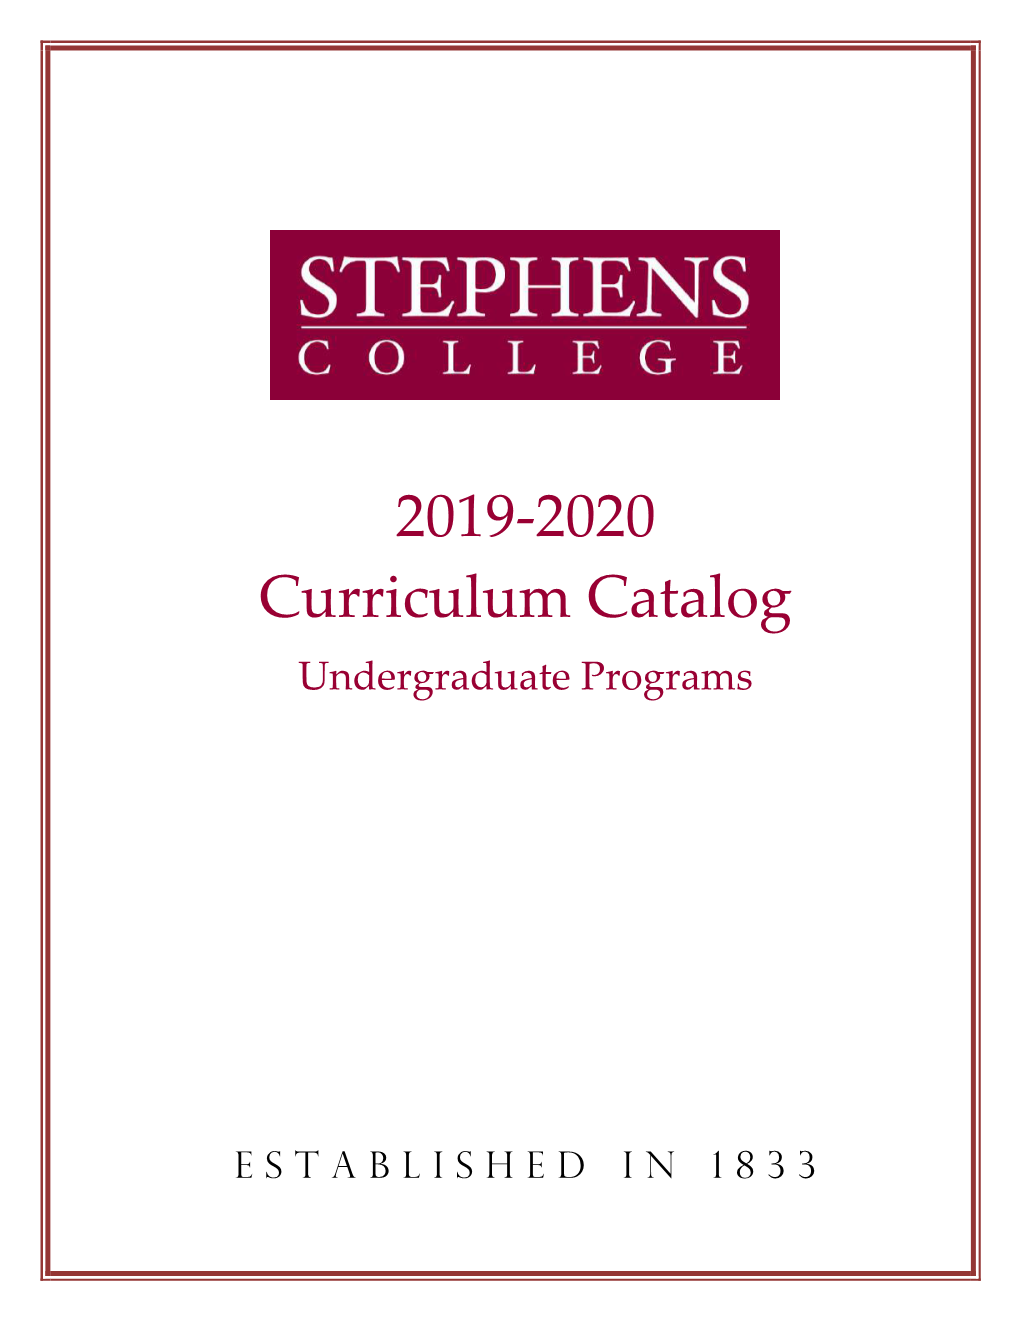 2019-2020 Undergraduate Curriculum Catalog